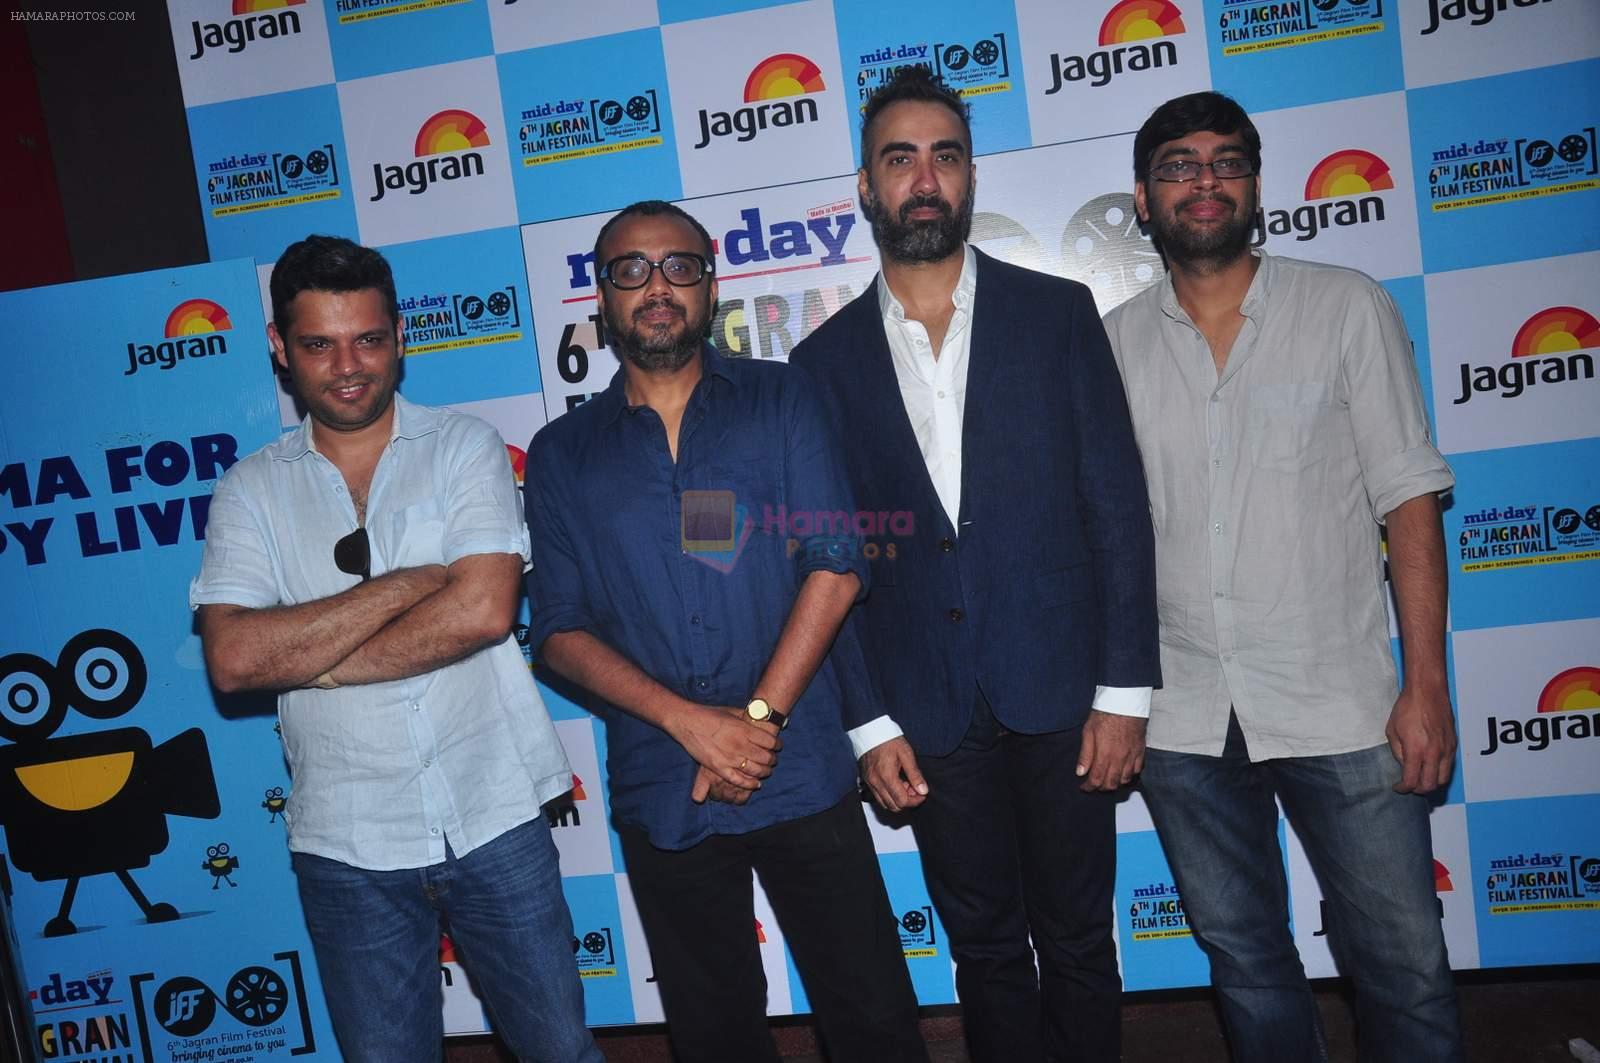 Ranvir Shorey, Dibakar Banerjee at Jagran film fest opening in Fun on  28th Sept 2015